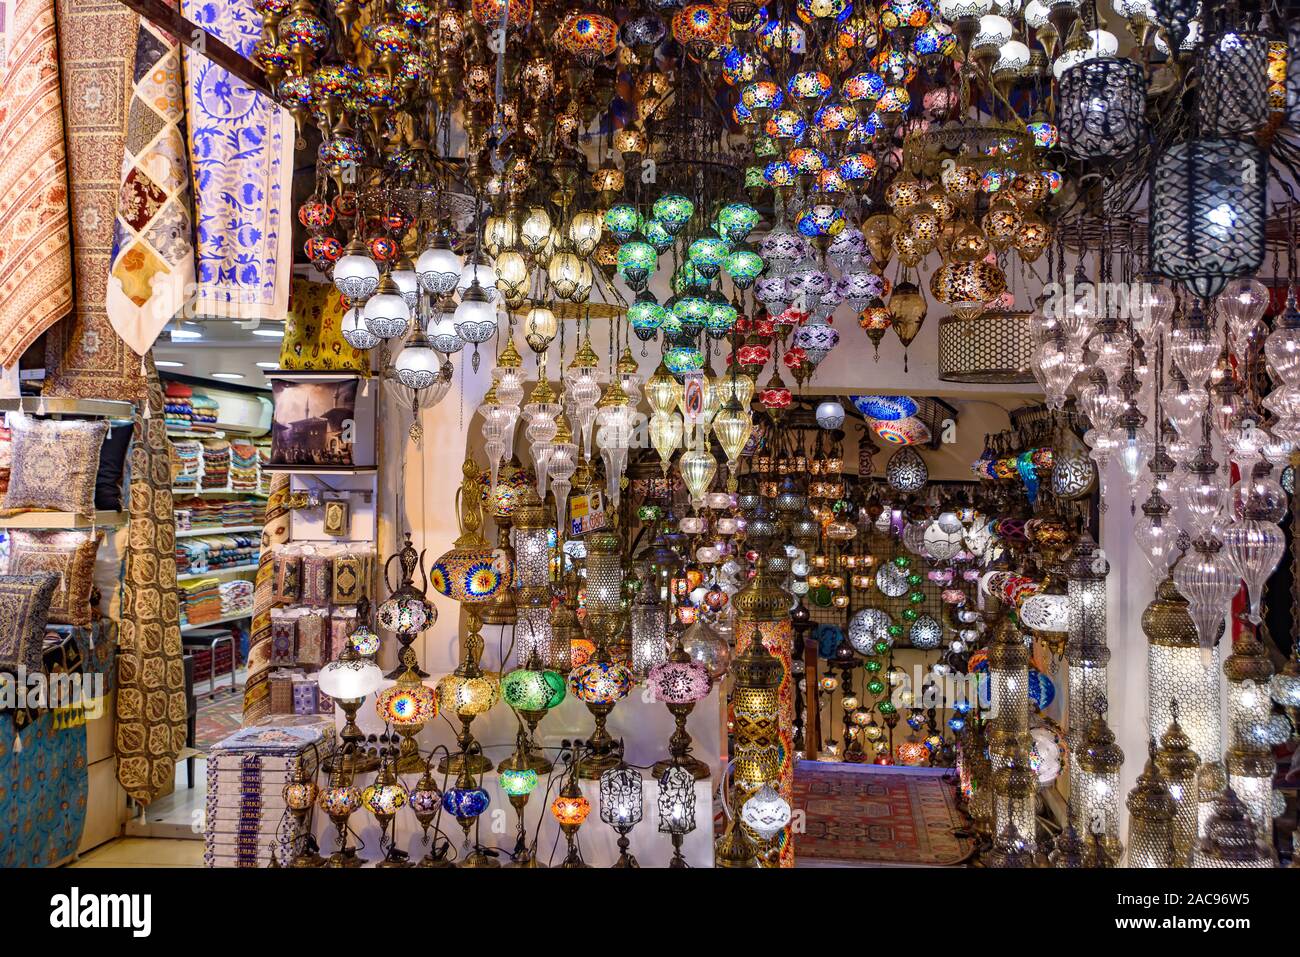 Bunte türkische Mosaik Lampen/Osmanischen Lichter in der Große Bazar, Istanbul, Türkei Stockfoto